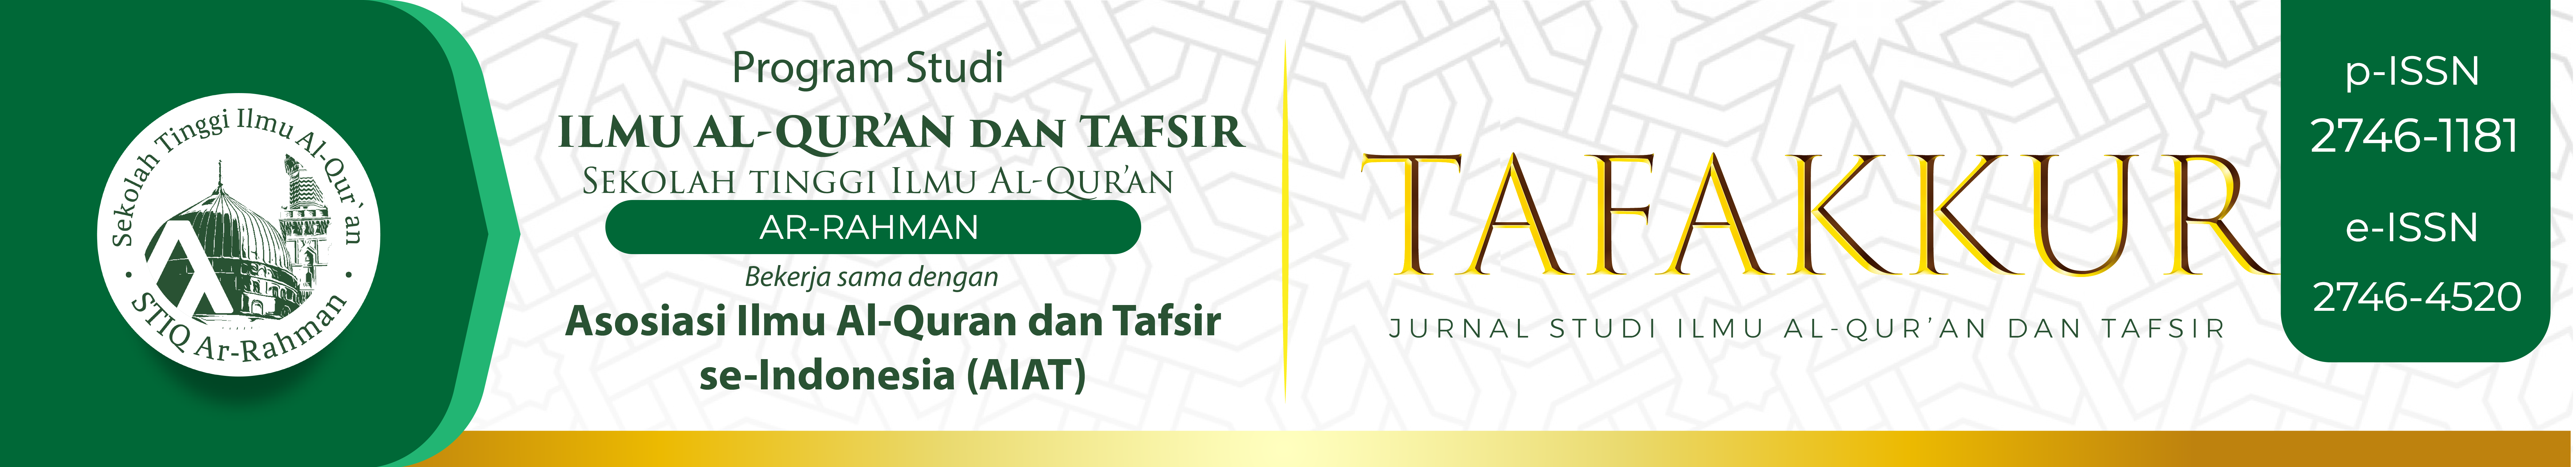 Tafakkur : Jurnal Ilmu Al-Qur'an dan Tafsir